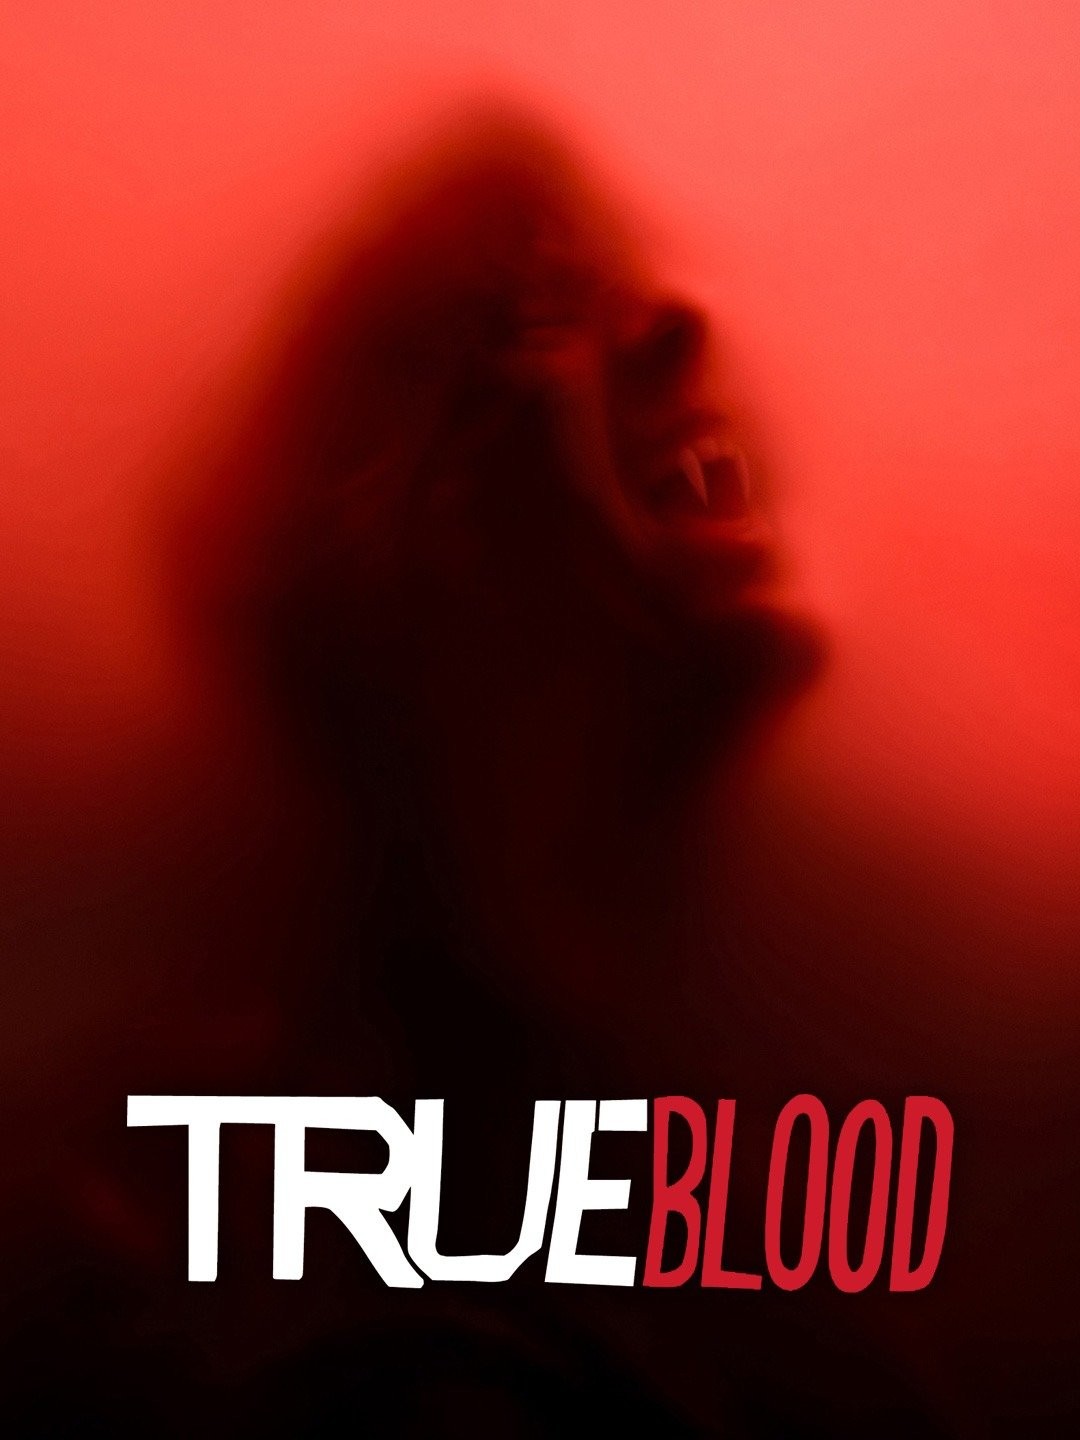 True Blood série ORIGINAL da HBO chega a Netflix - Notícias TV